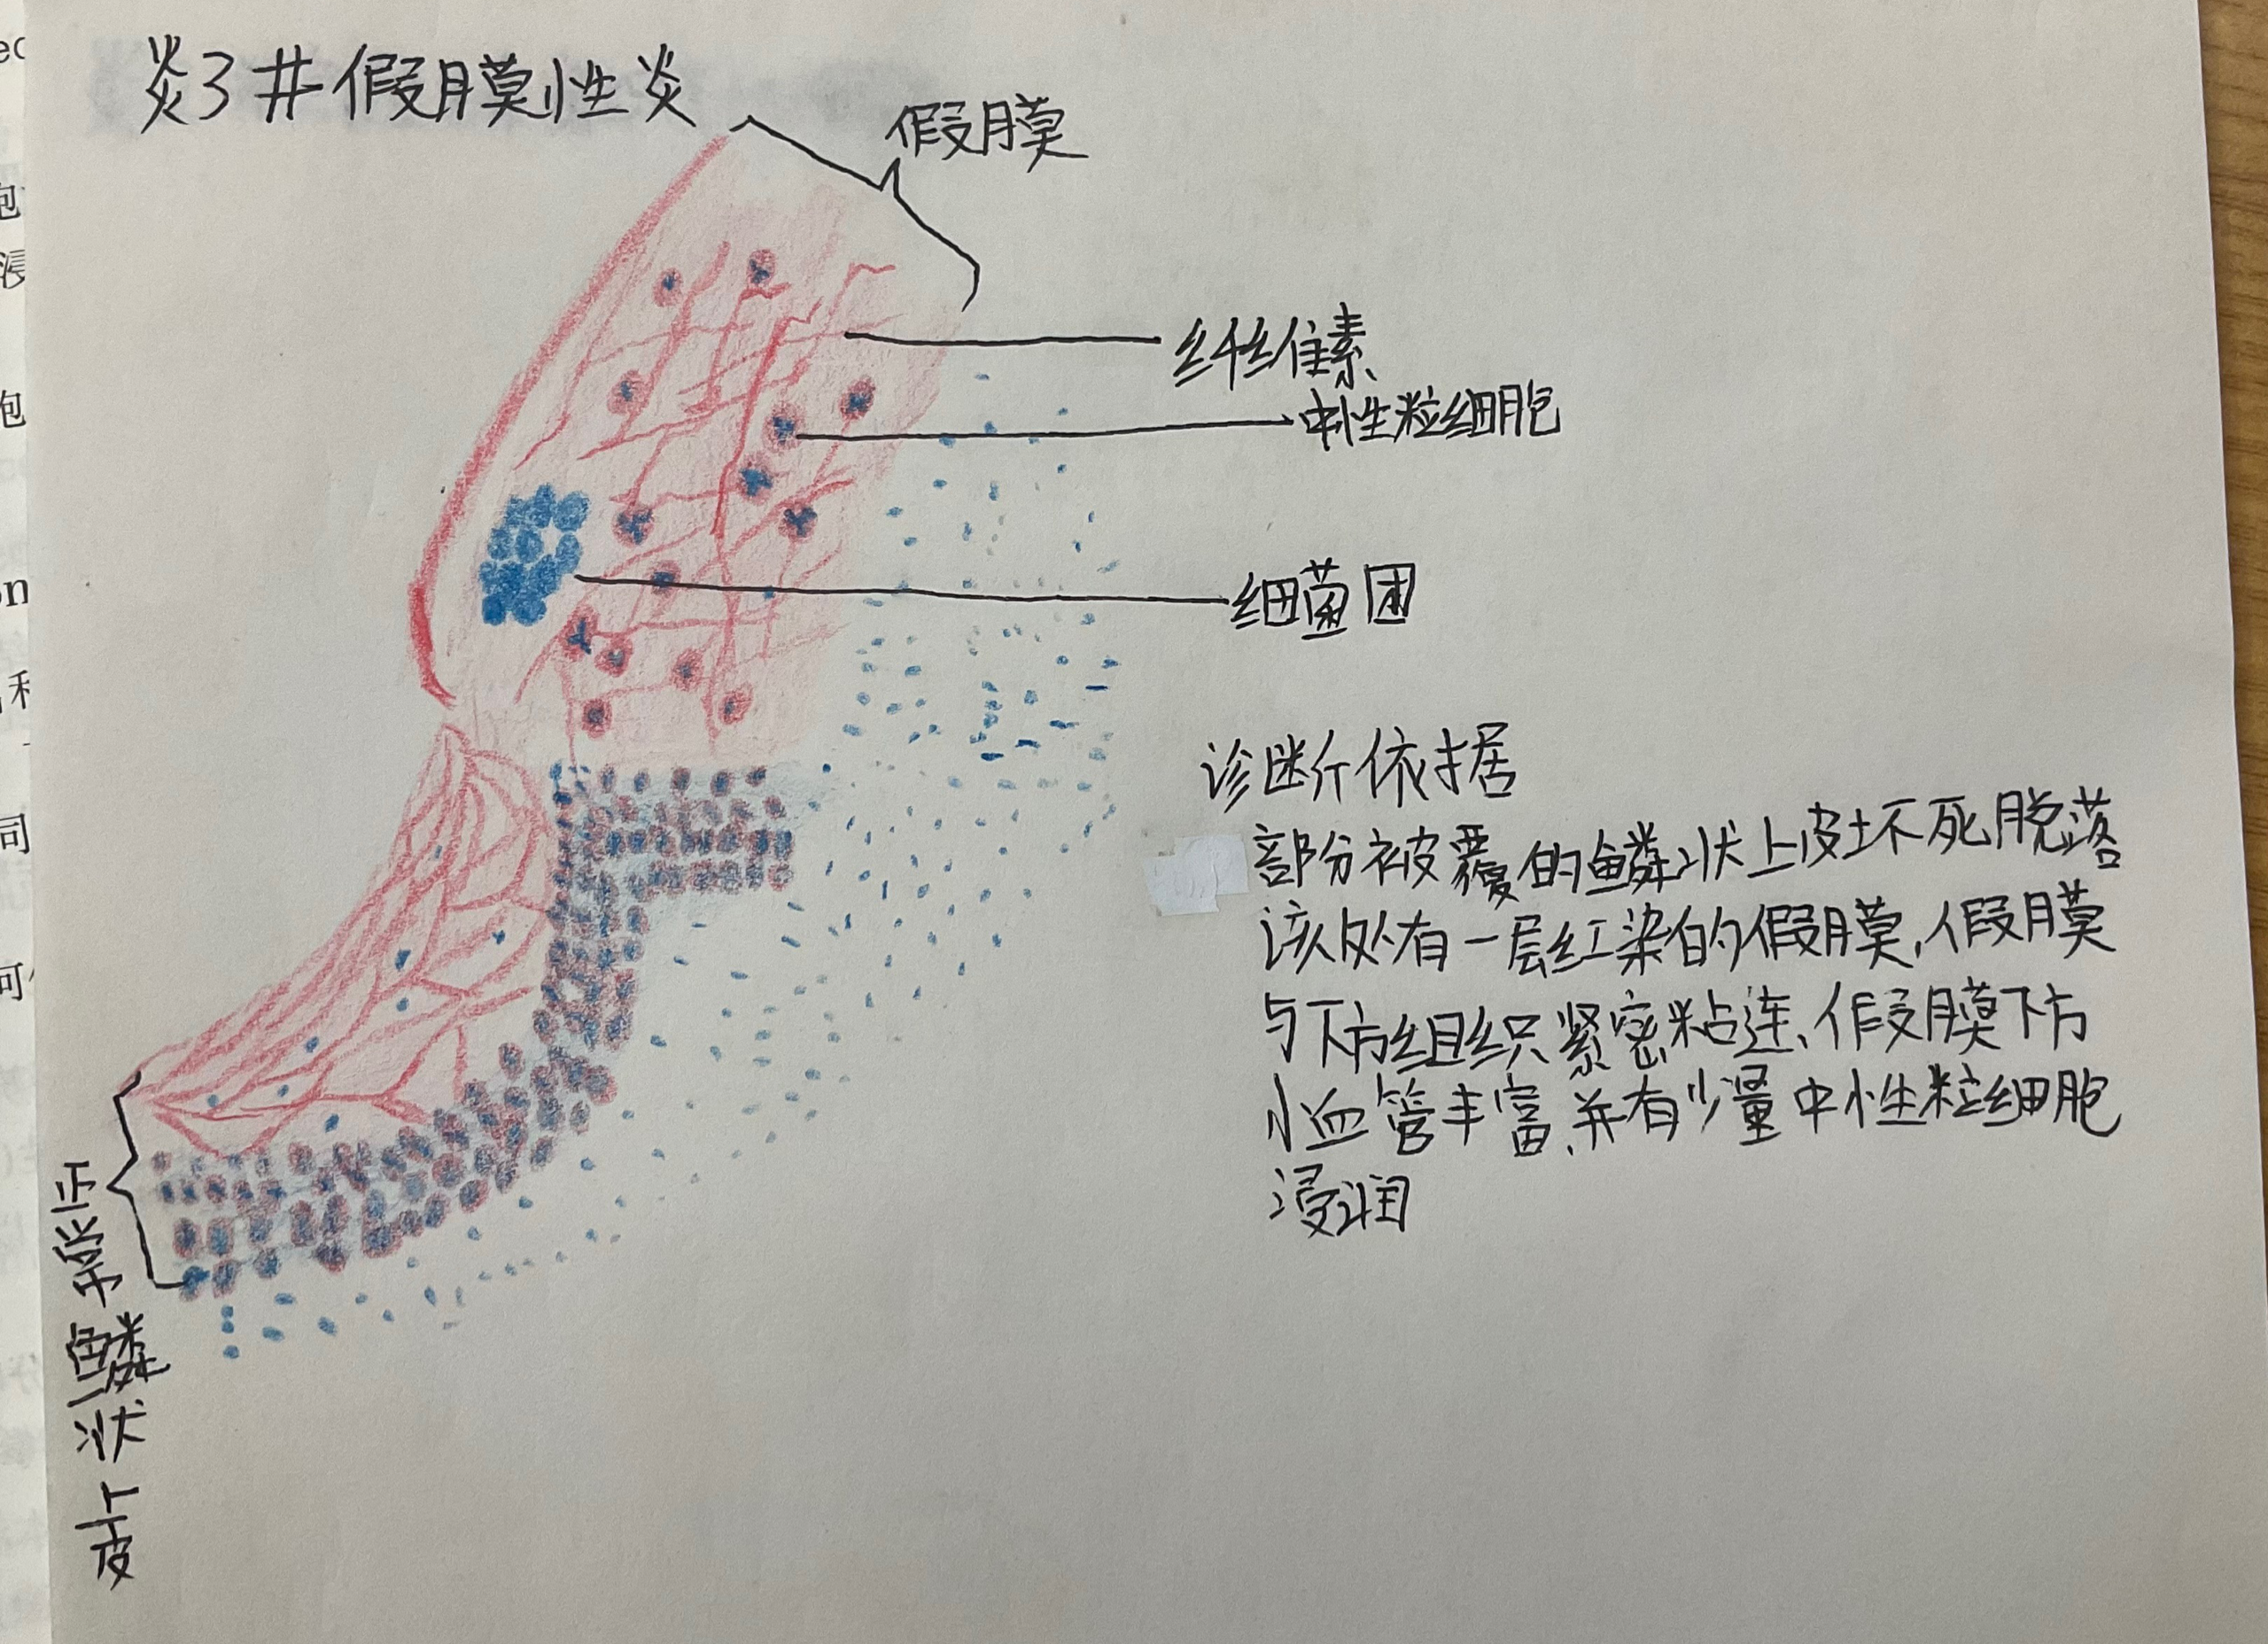 急性蜂窝织炎性阑尾炎假膜性炎镜下红蓝铅笔手绘图